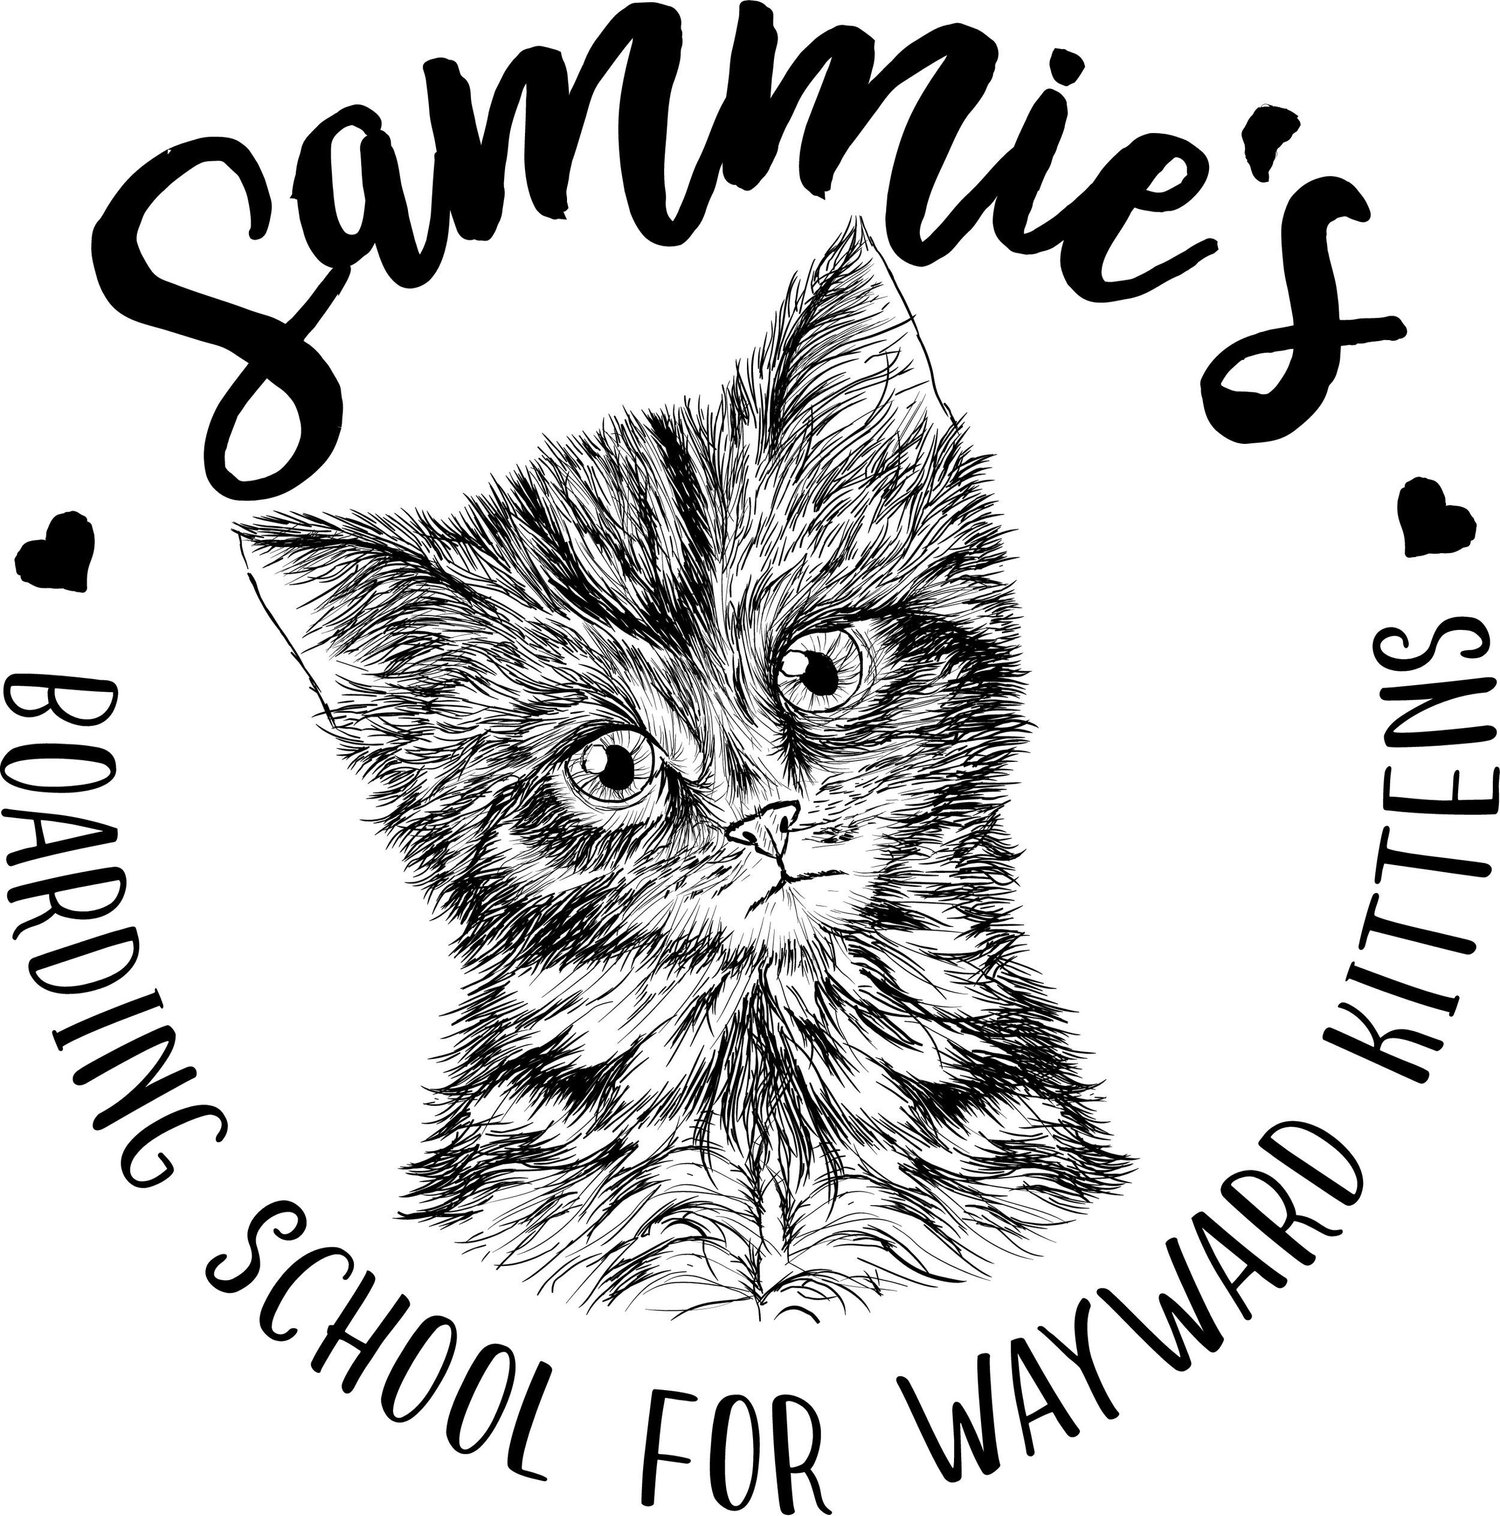 Sammie's Boarding School For Wayward Kittens